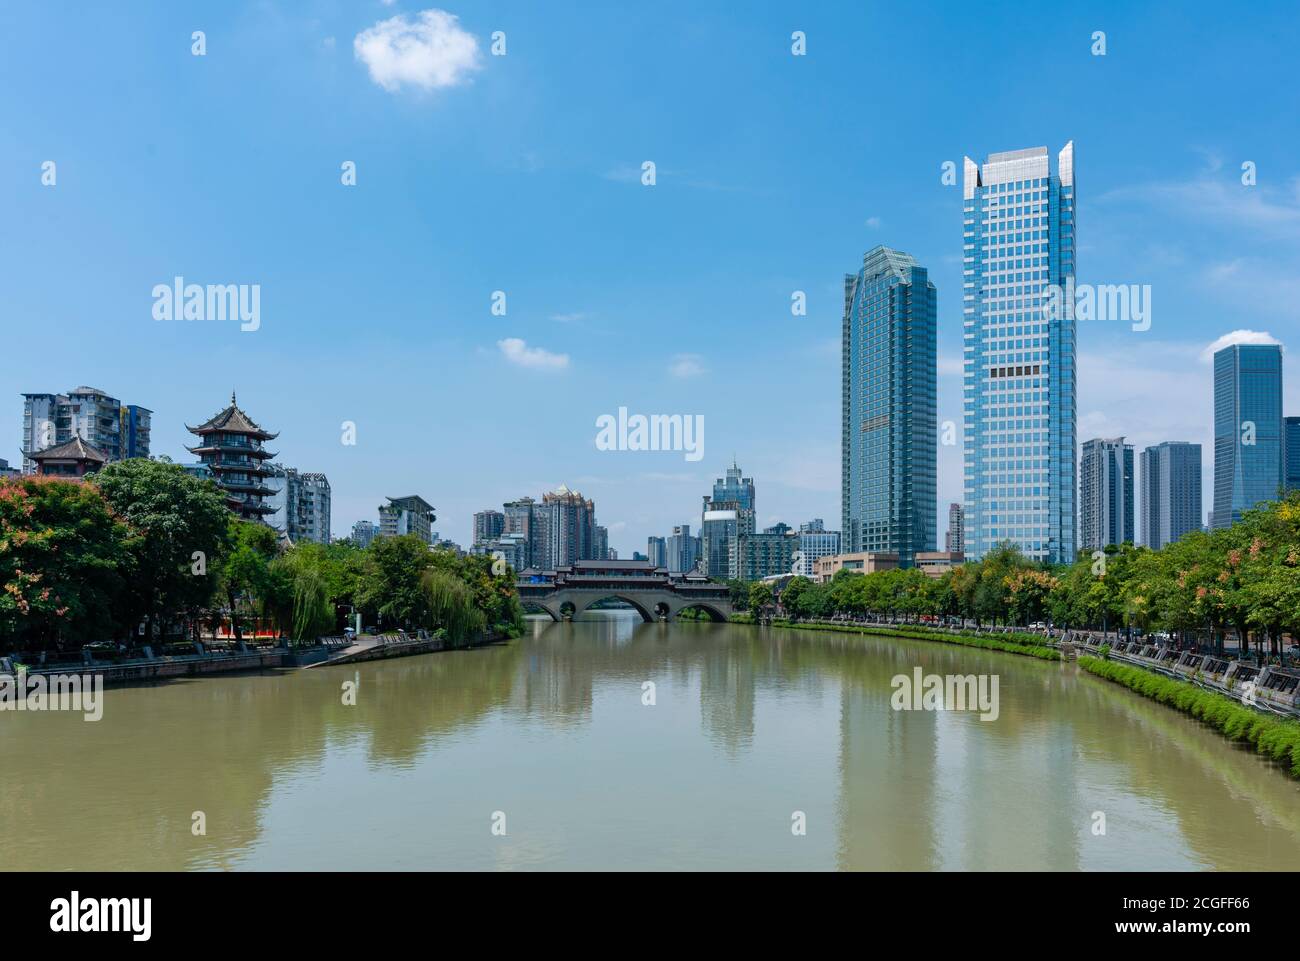 View of Chengdu city in China Stock Photo